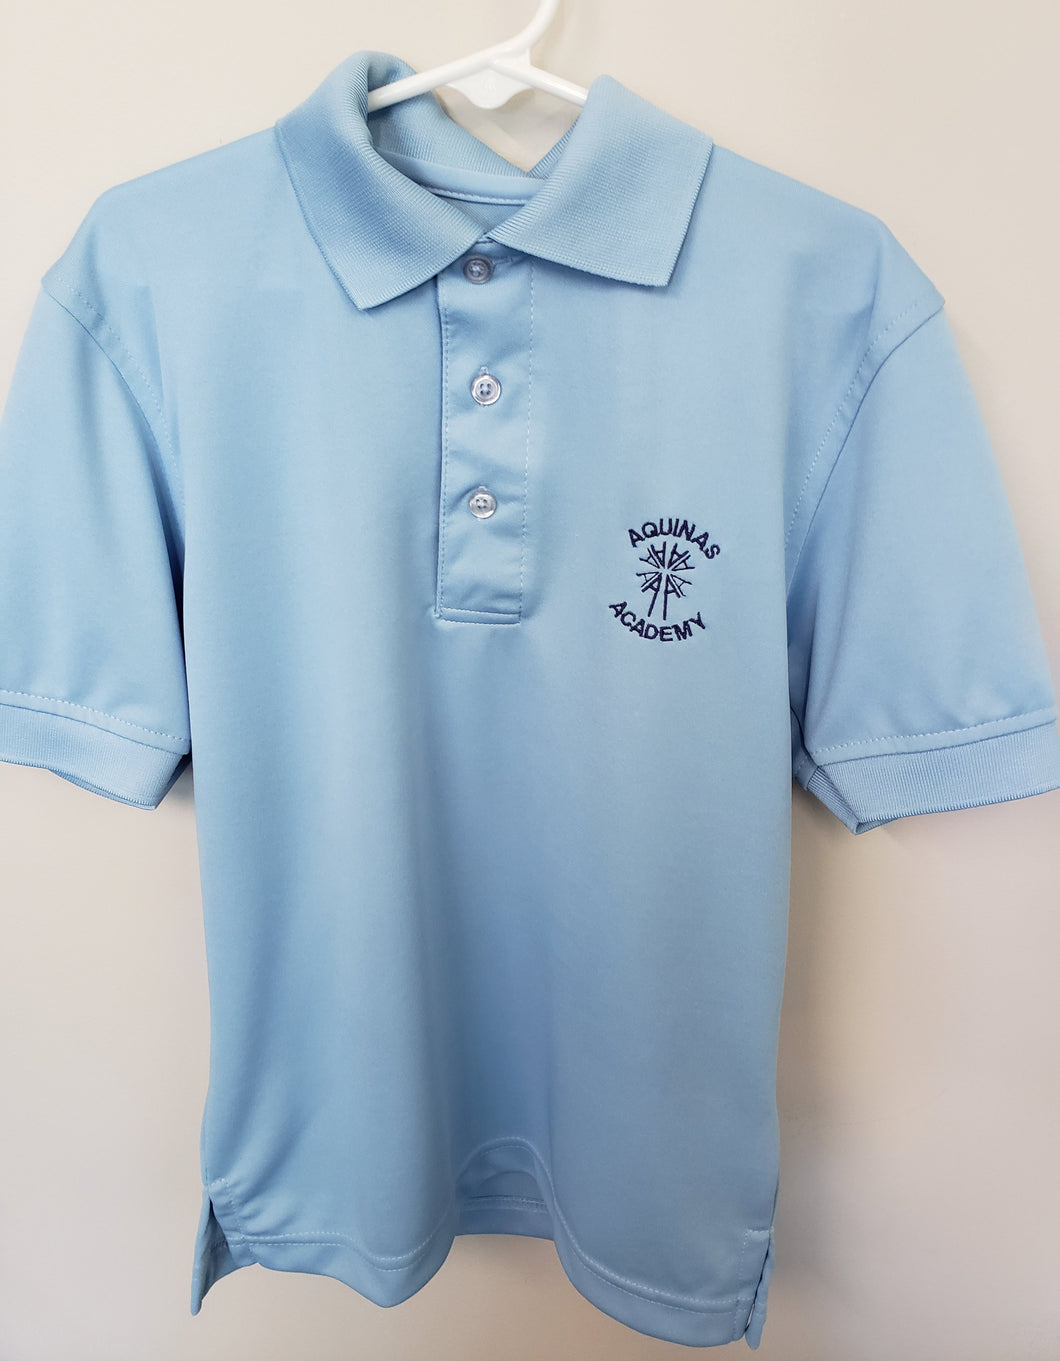 AA006 Aquinas Academy - Short Sleeve Unisex Polyester Wicking Polo - Carolina Blue - Adult Sizes